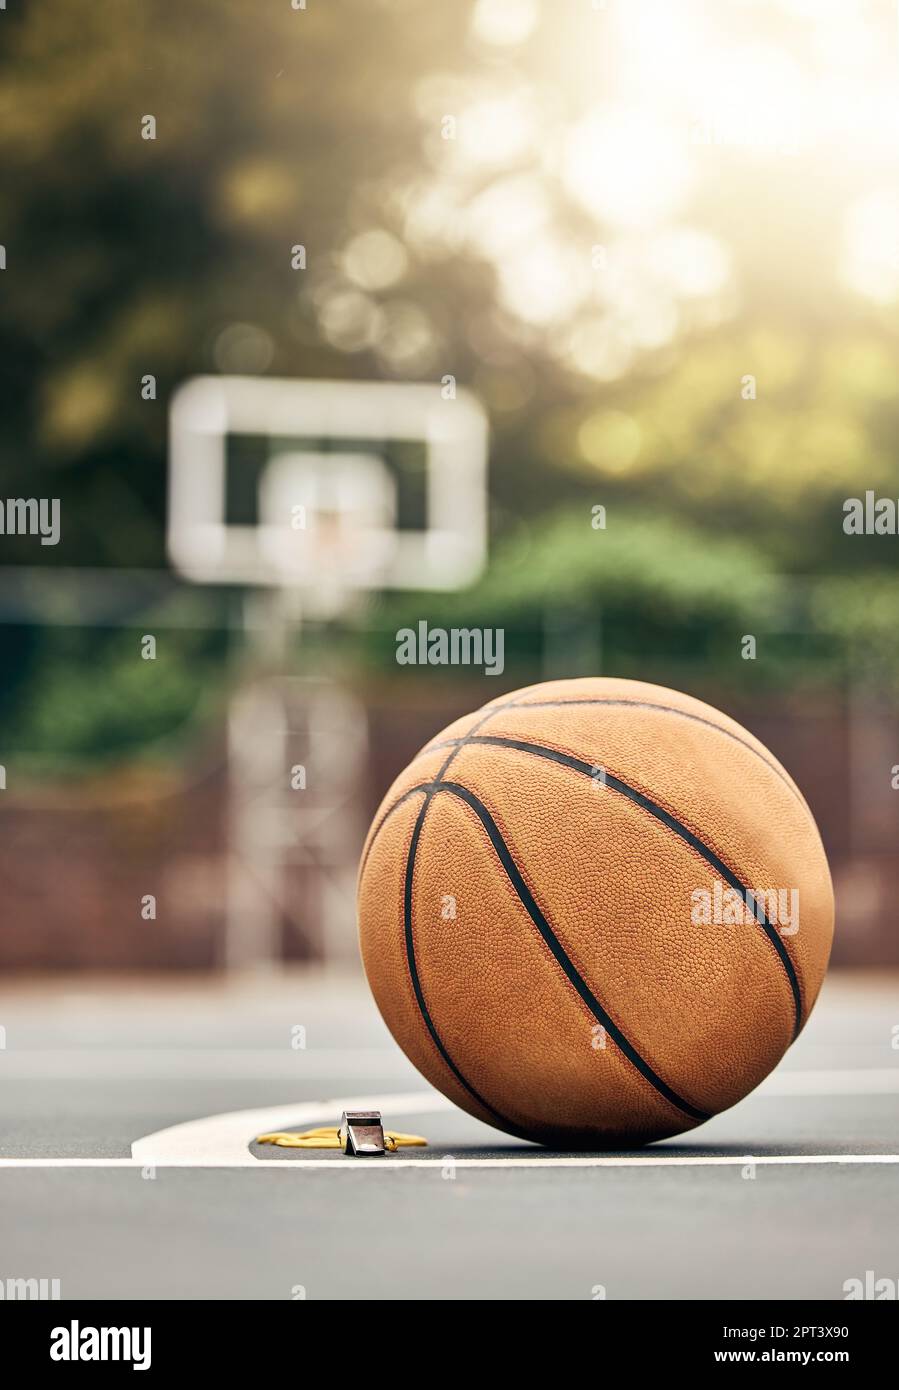 Ballon utilisé pour le basket-ball sur un terrain de basket-ball extérieur dans un parc. Mockup pour le sport, l'entraînement et se préparer à jouer un match pour l'exercice. Été Banque D'Images